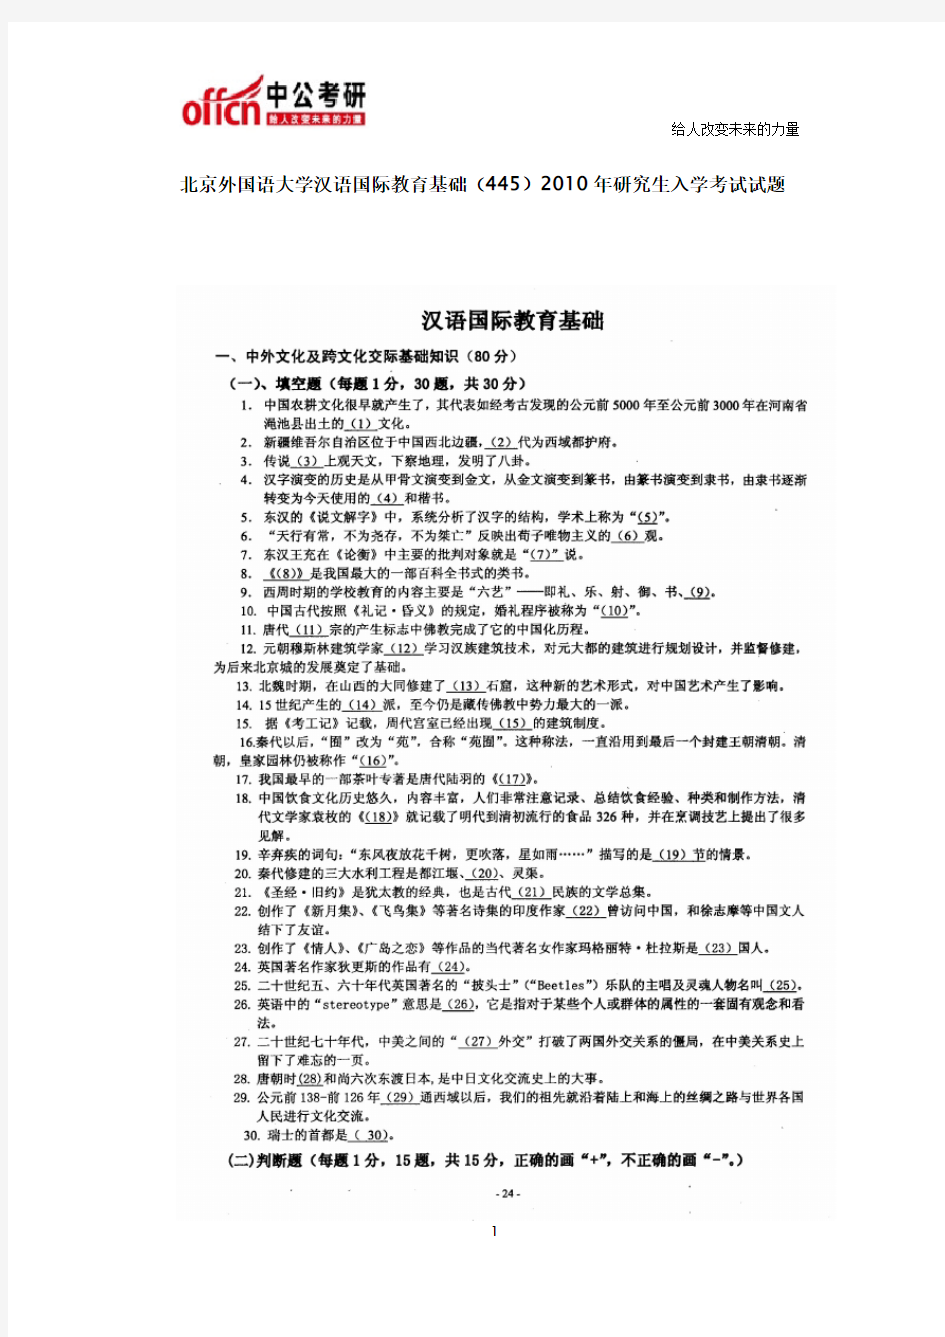 北京外国语大学354汉语基础+445汉语国际教育基础